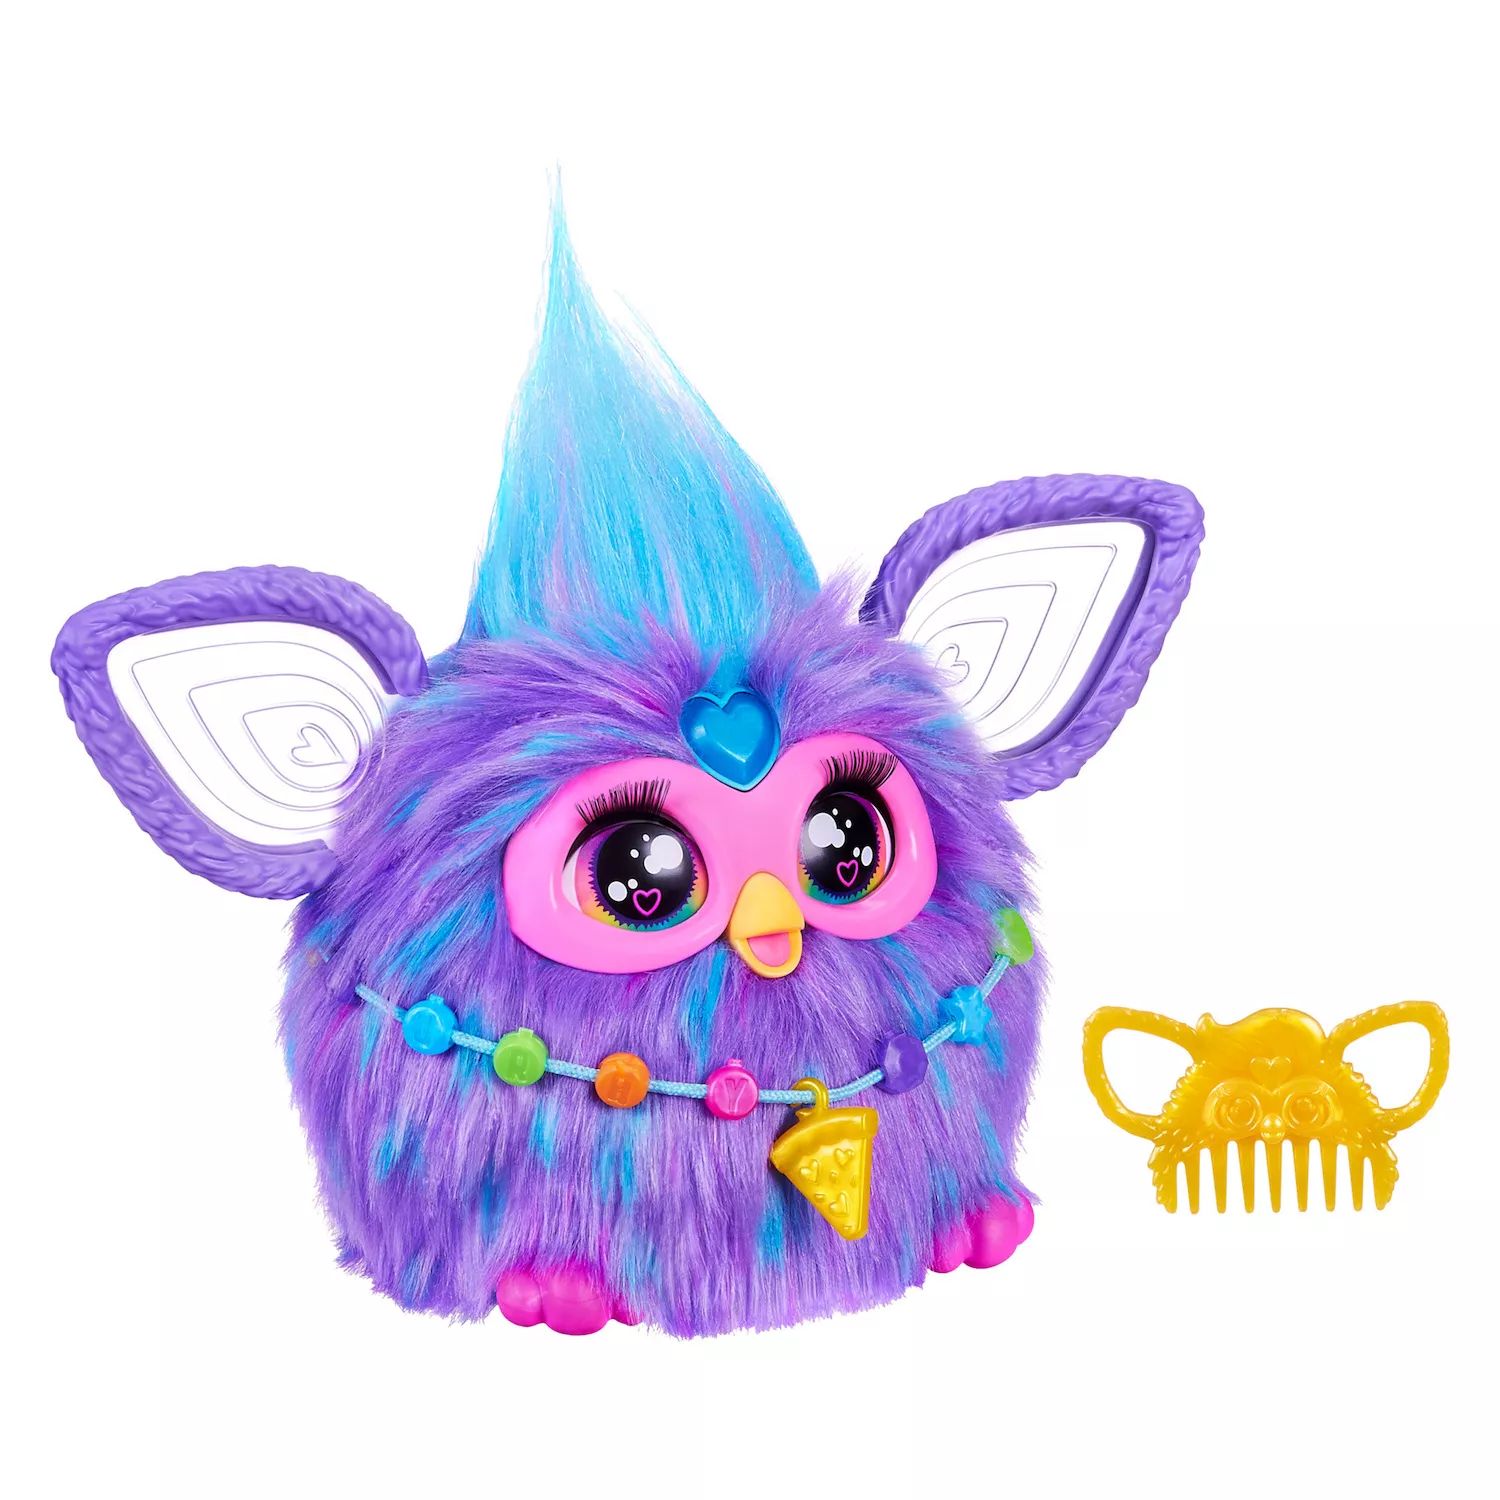 Интерактивная игрушка Hasbro Furby фиолетового цвета Hasbro